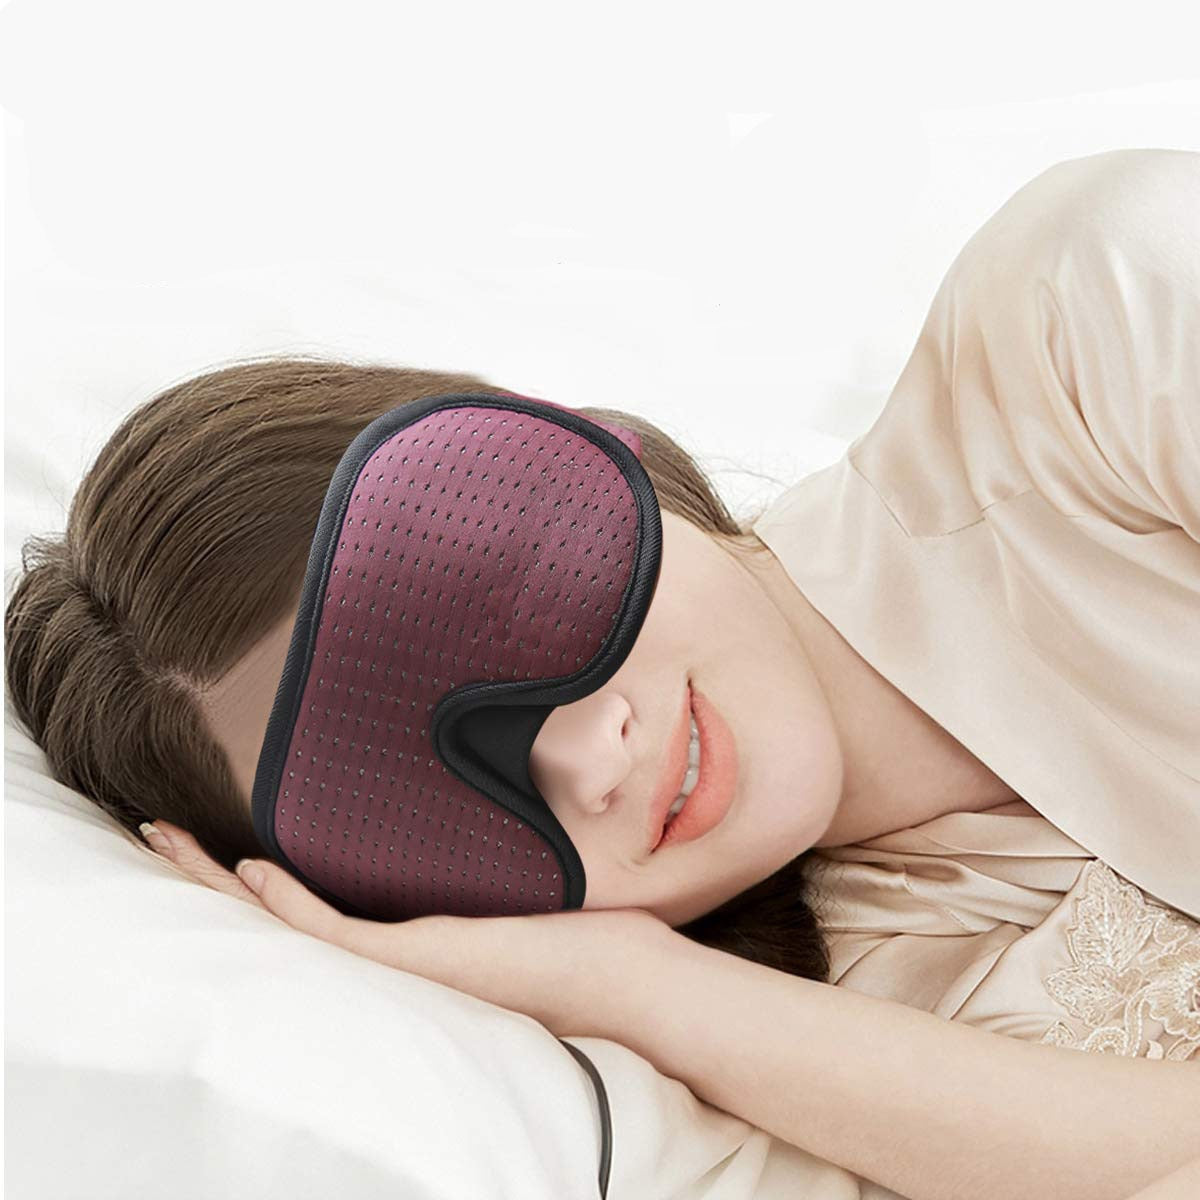 3D  Blocking Light Sleeping Eye Mask